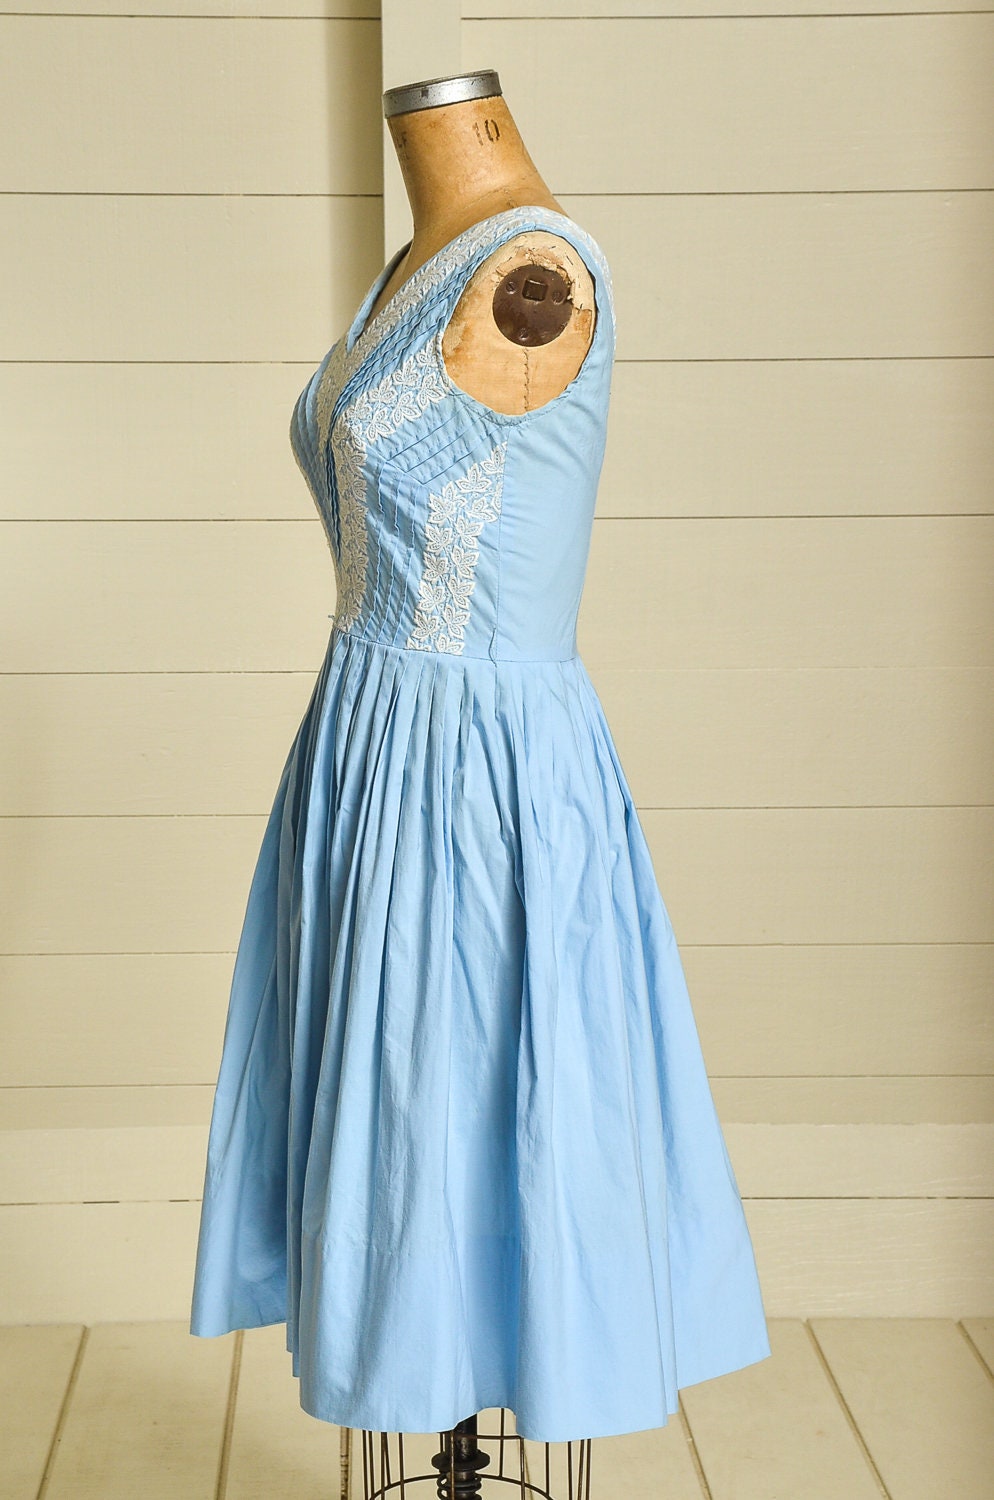 1950s Blue Cotton Full Skirt Day Dress Mid Century Swing Dress | Etsy